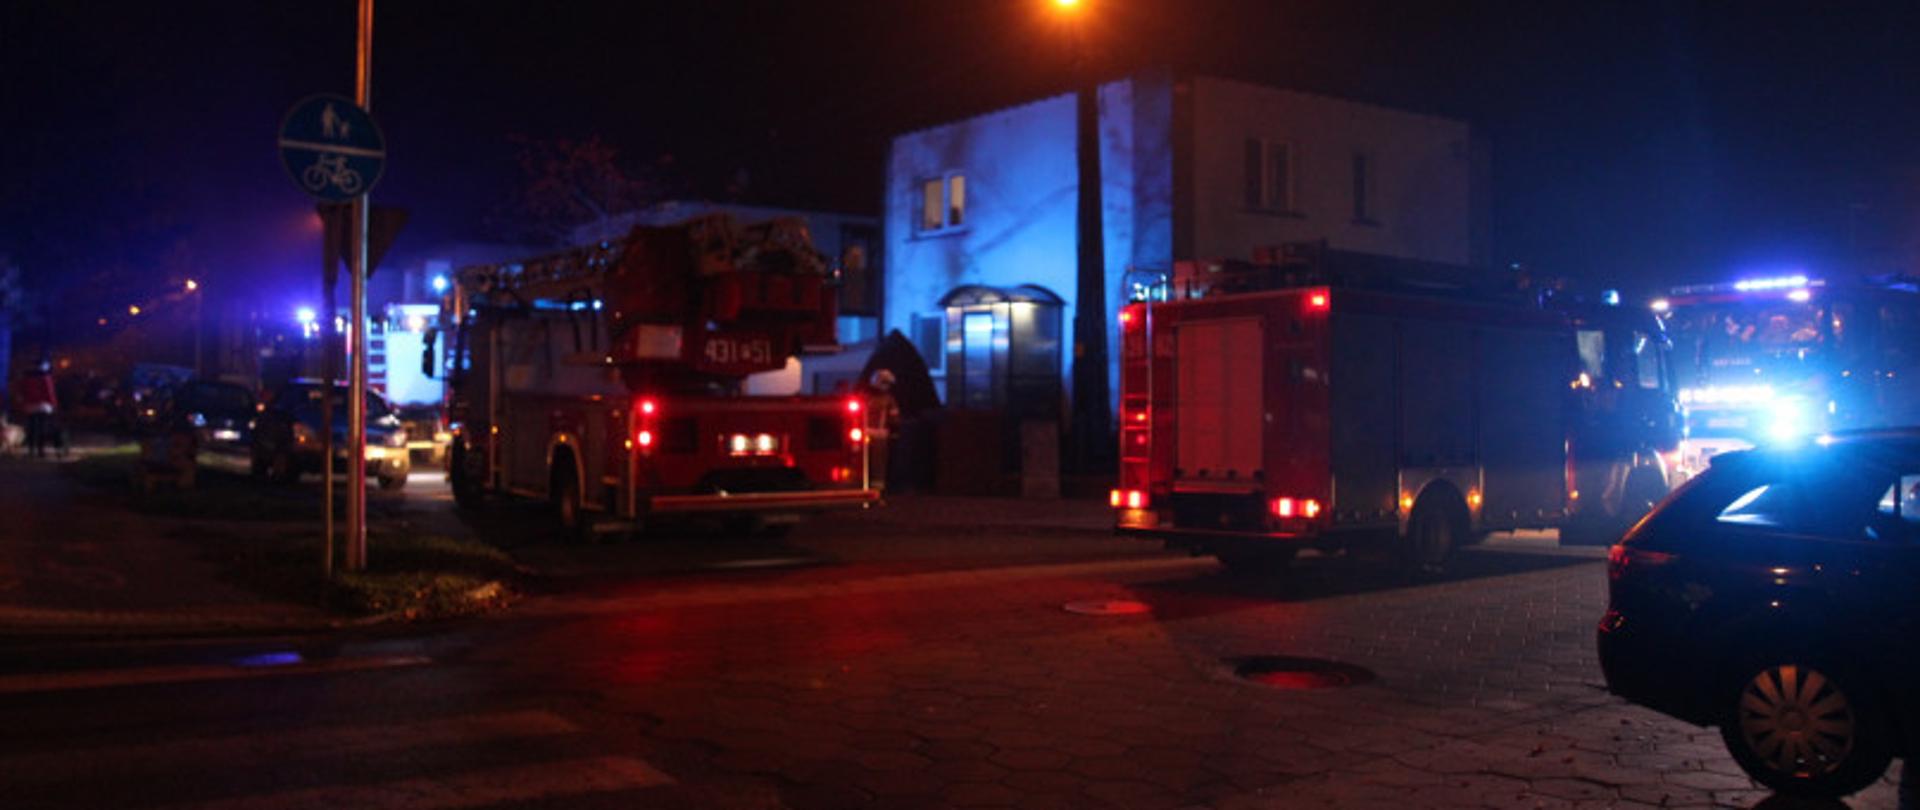 Zastępy straży pożarnej stoją przed budynkiem mieszkalnym. 